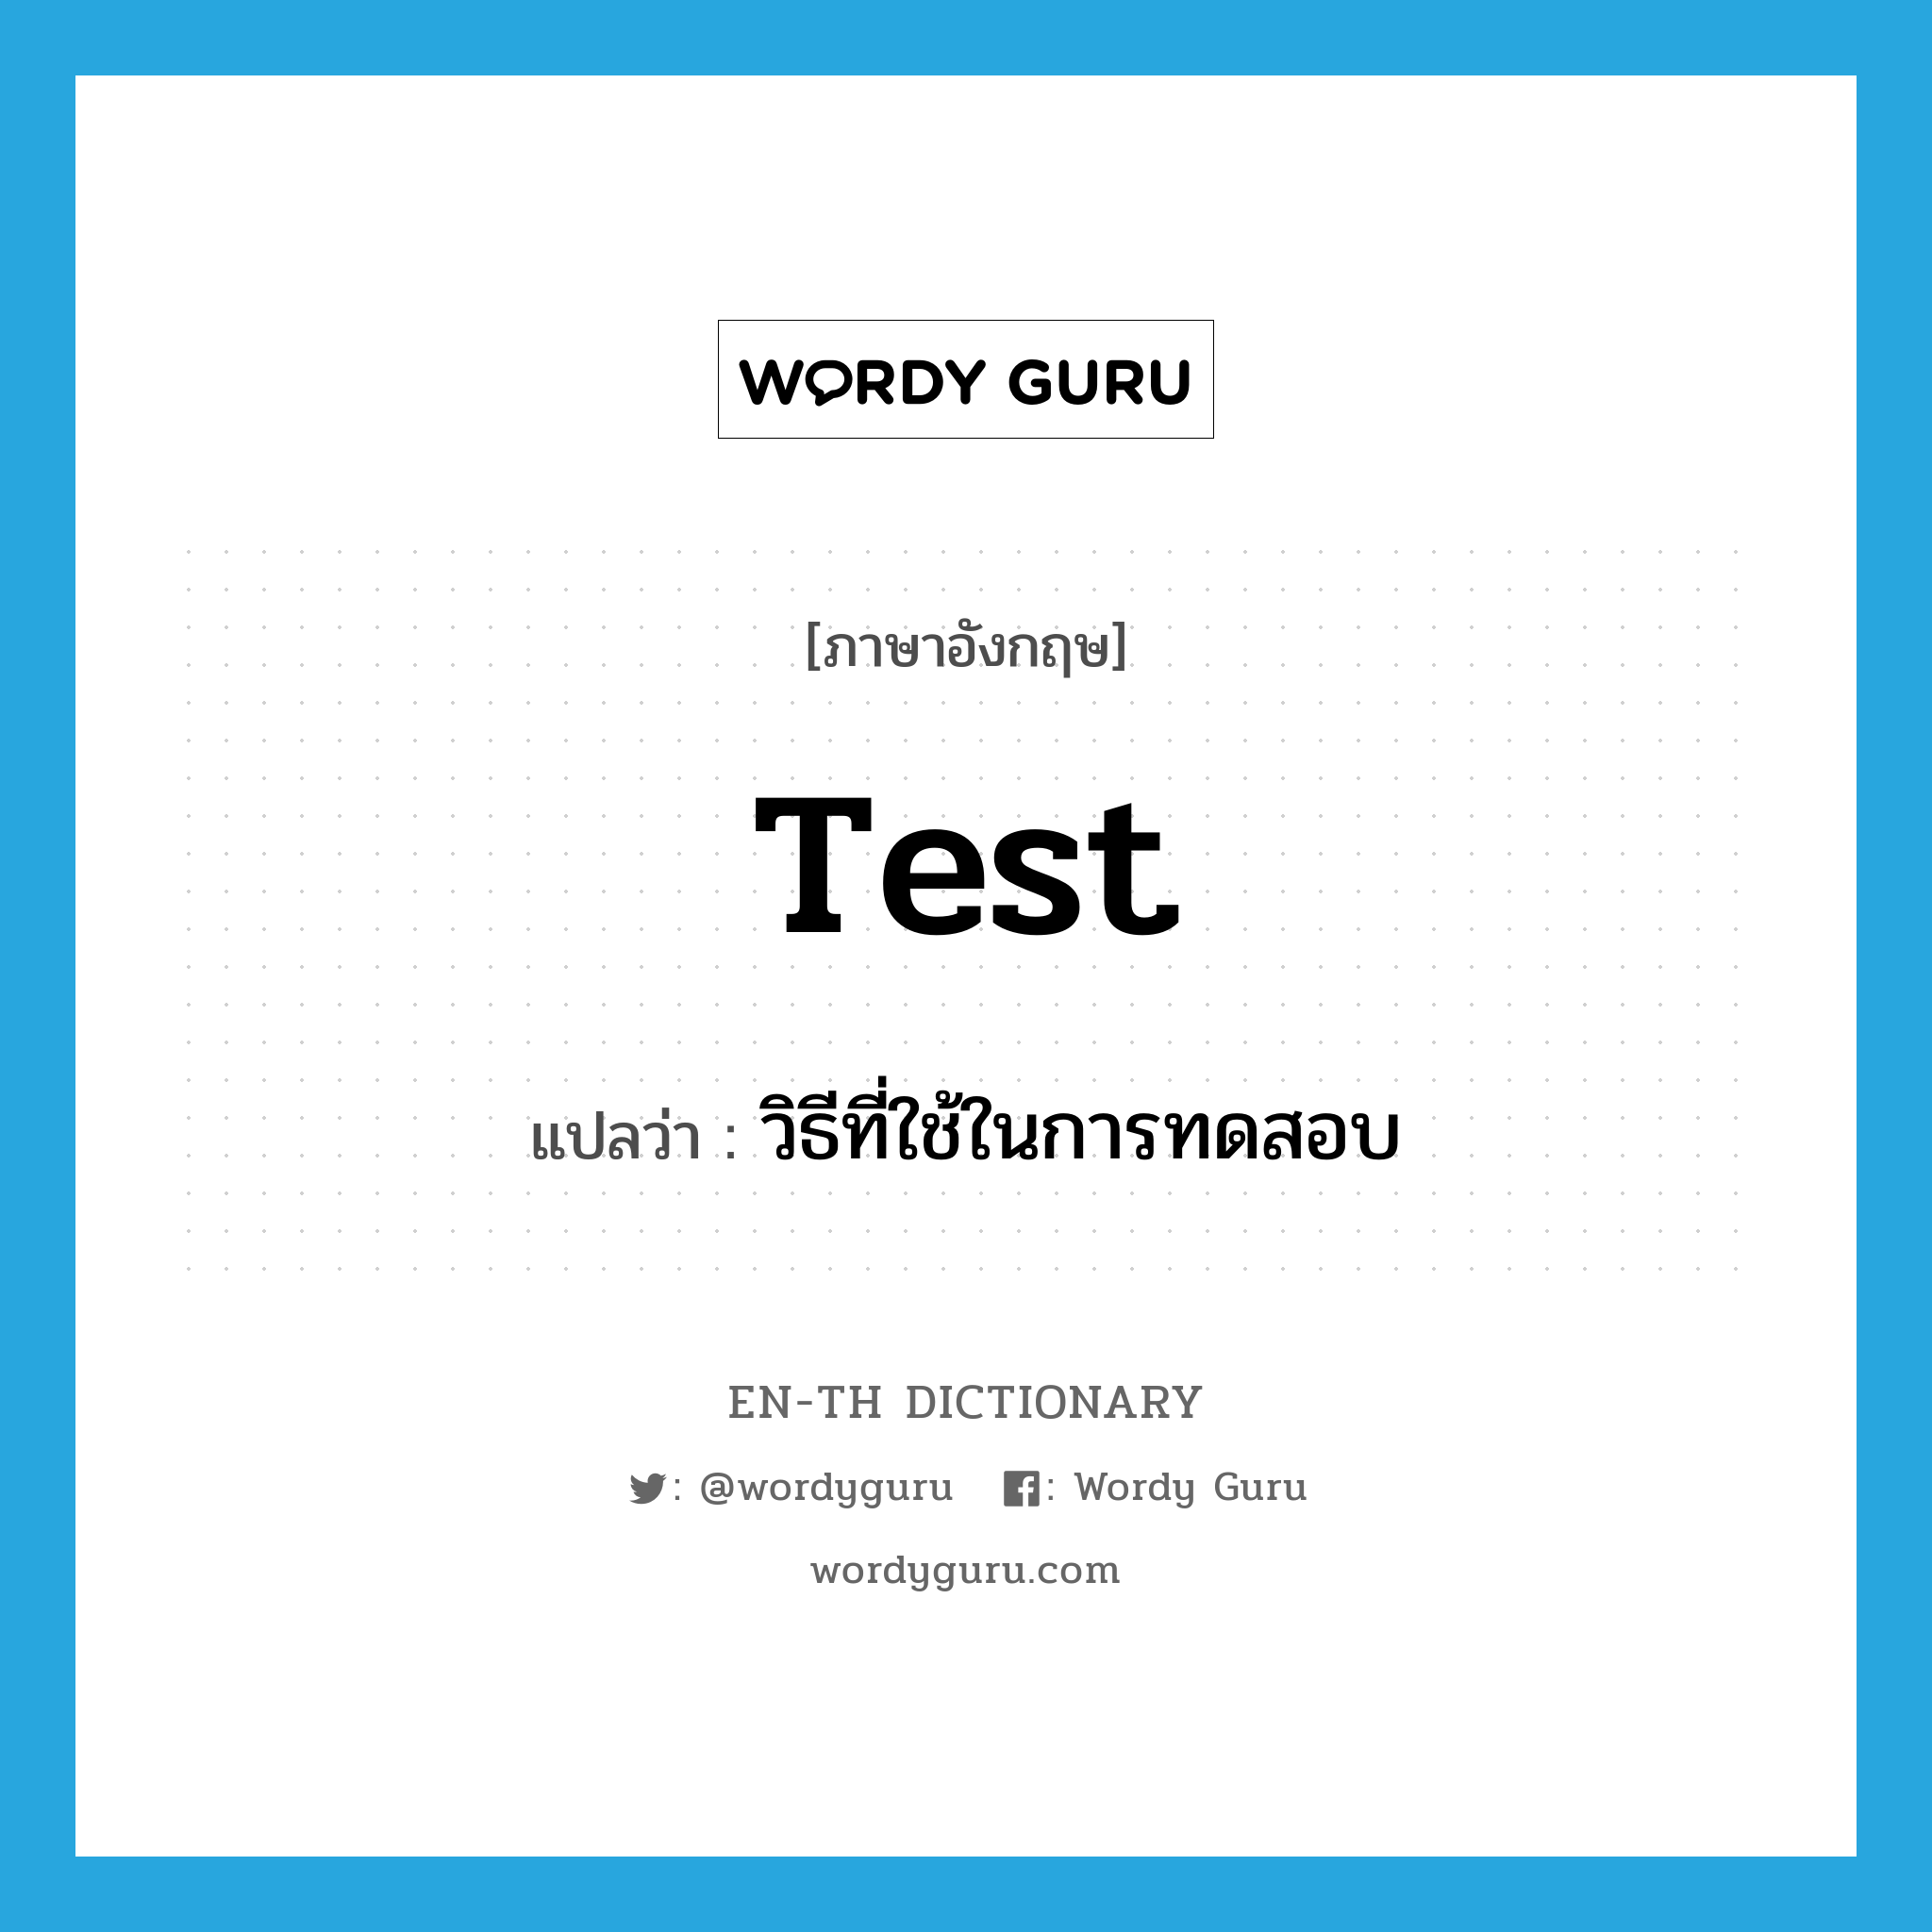 test แปลว่า?, คำศัพท์ภาษาอังกฤษ test แปลว่า วิธีที่ใช้ในการทดสอบ ประเภท N หมวด N